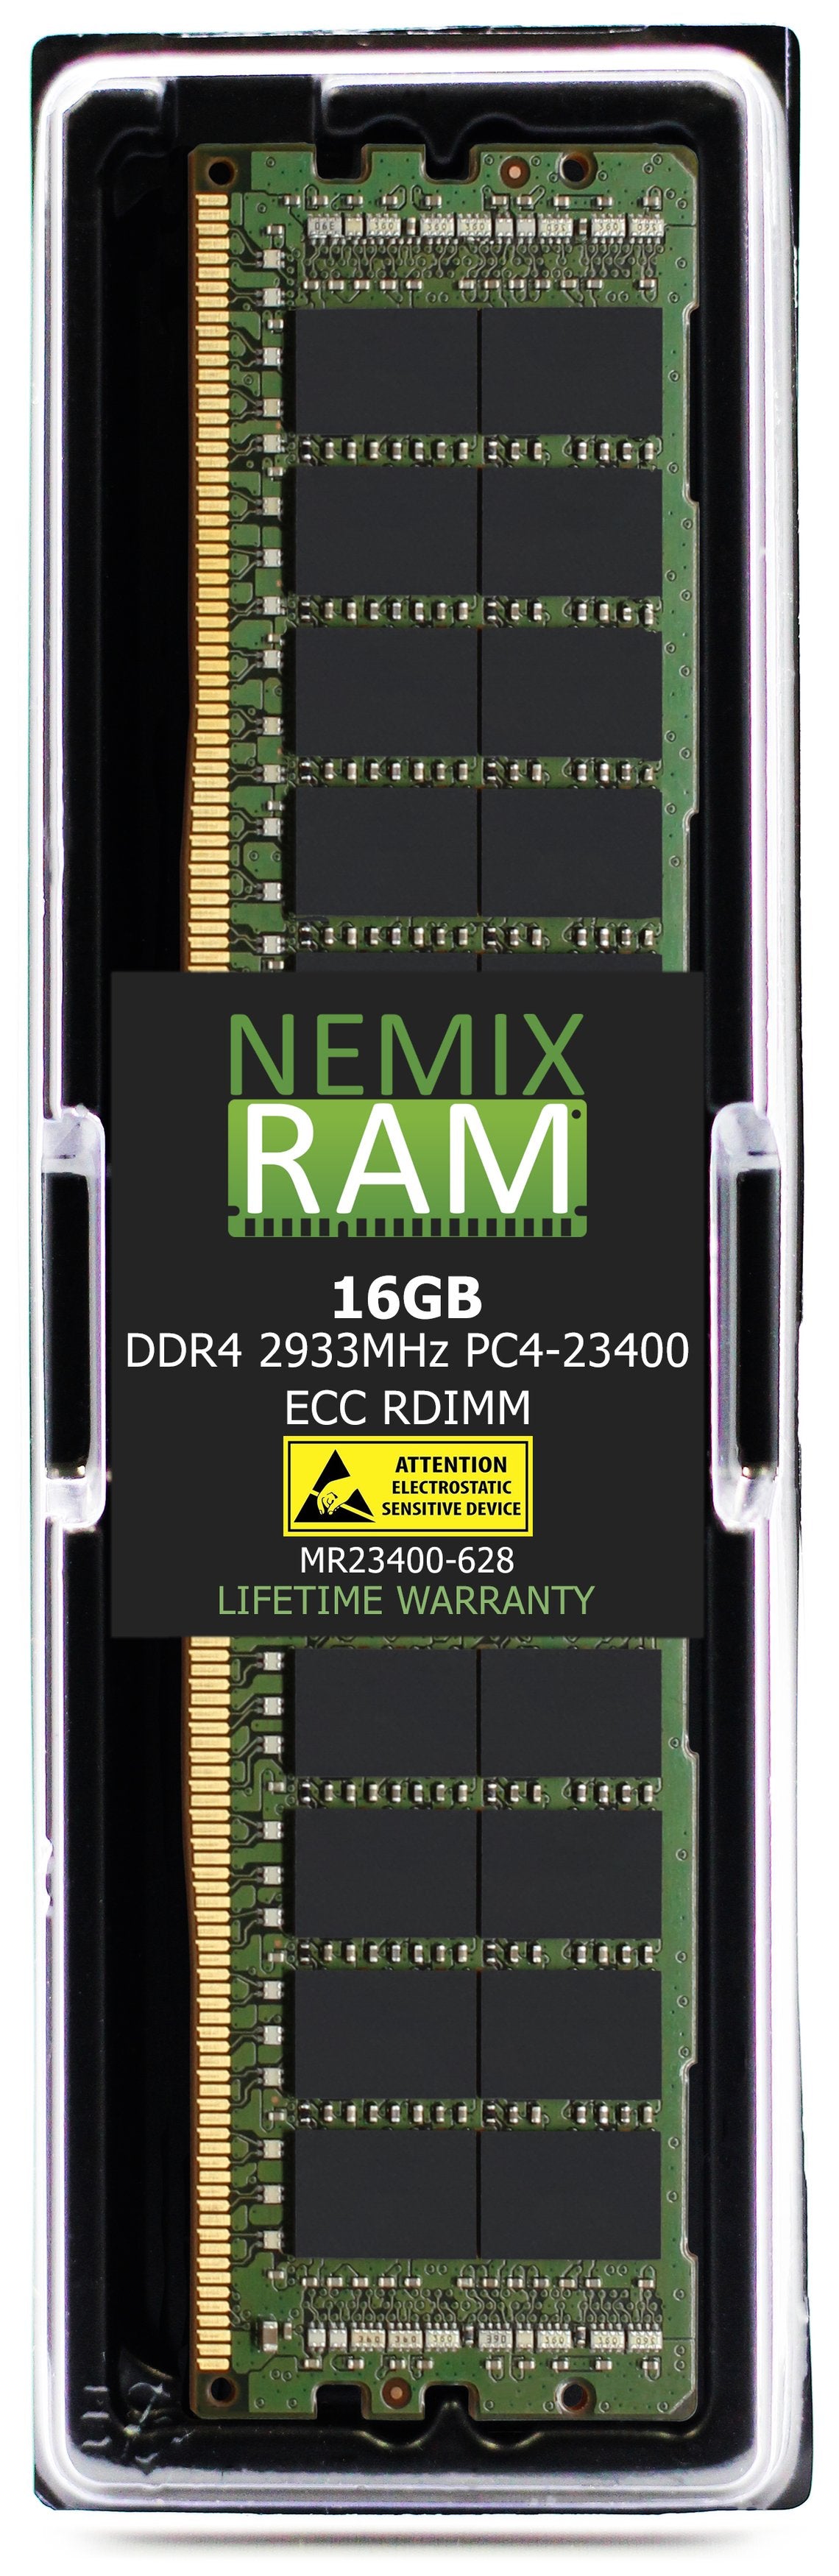 16GB DDR4 2933MHZ PC4-23400 RDIMM Compatible with Supermicro MEM-DR416L-CL03-ER29